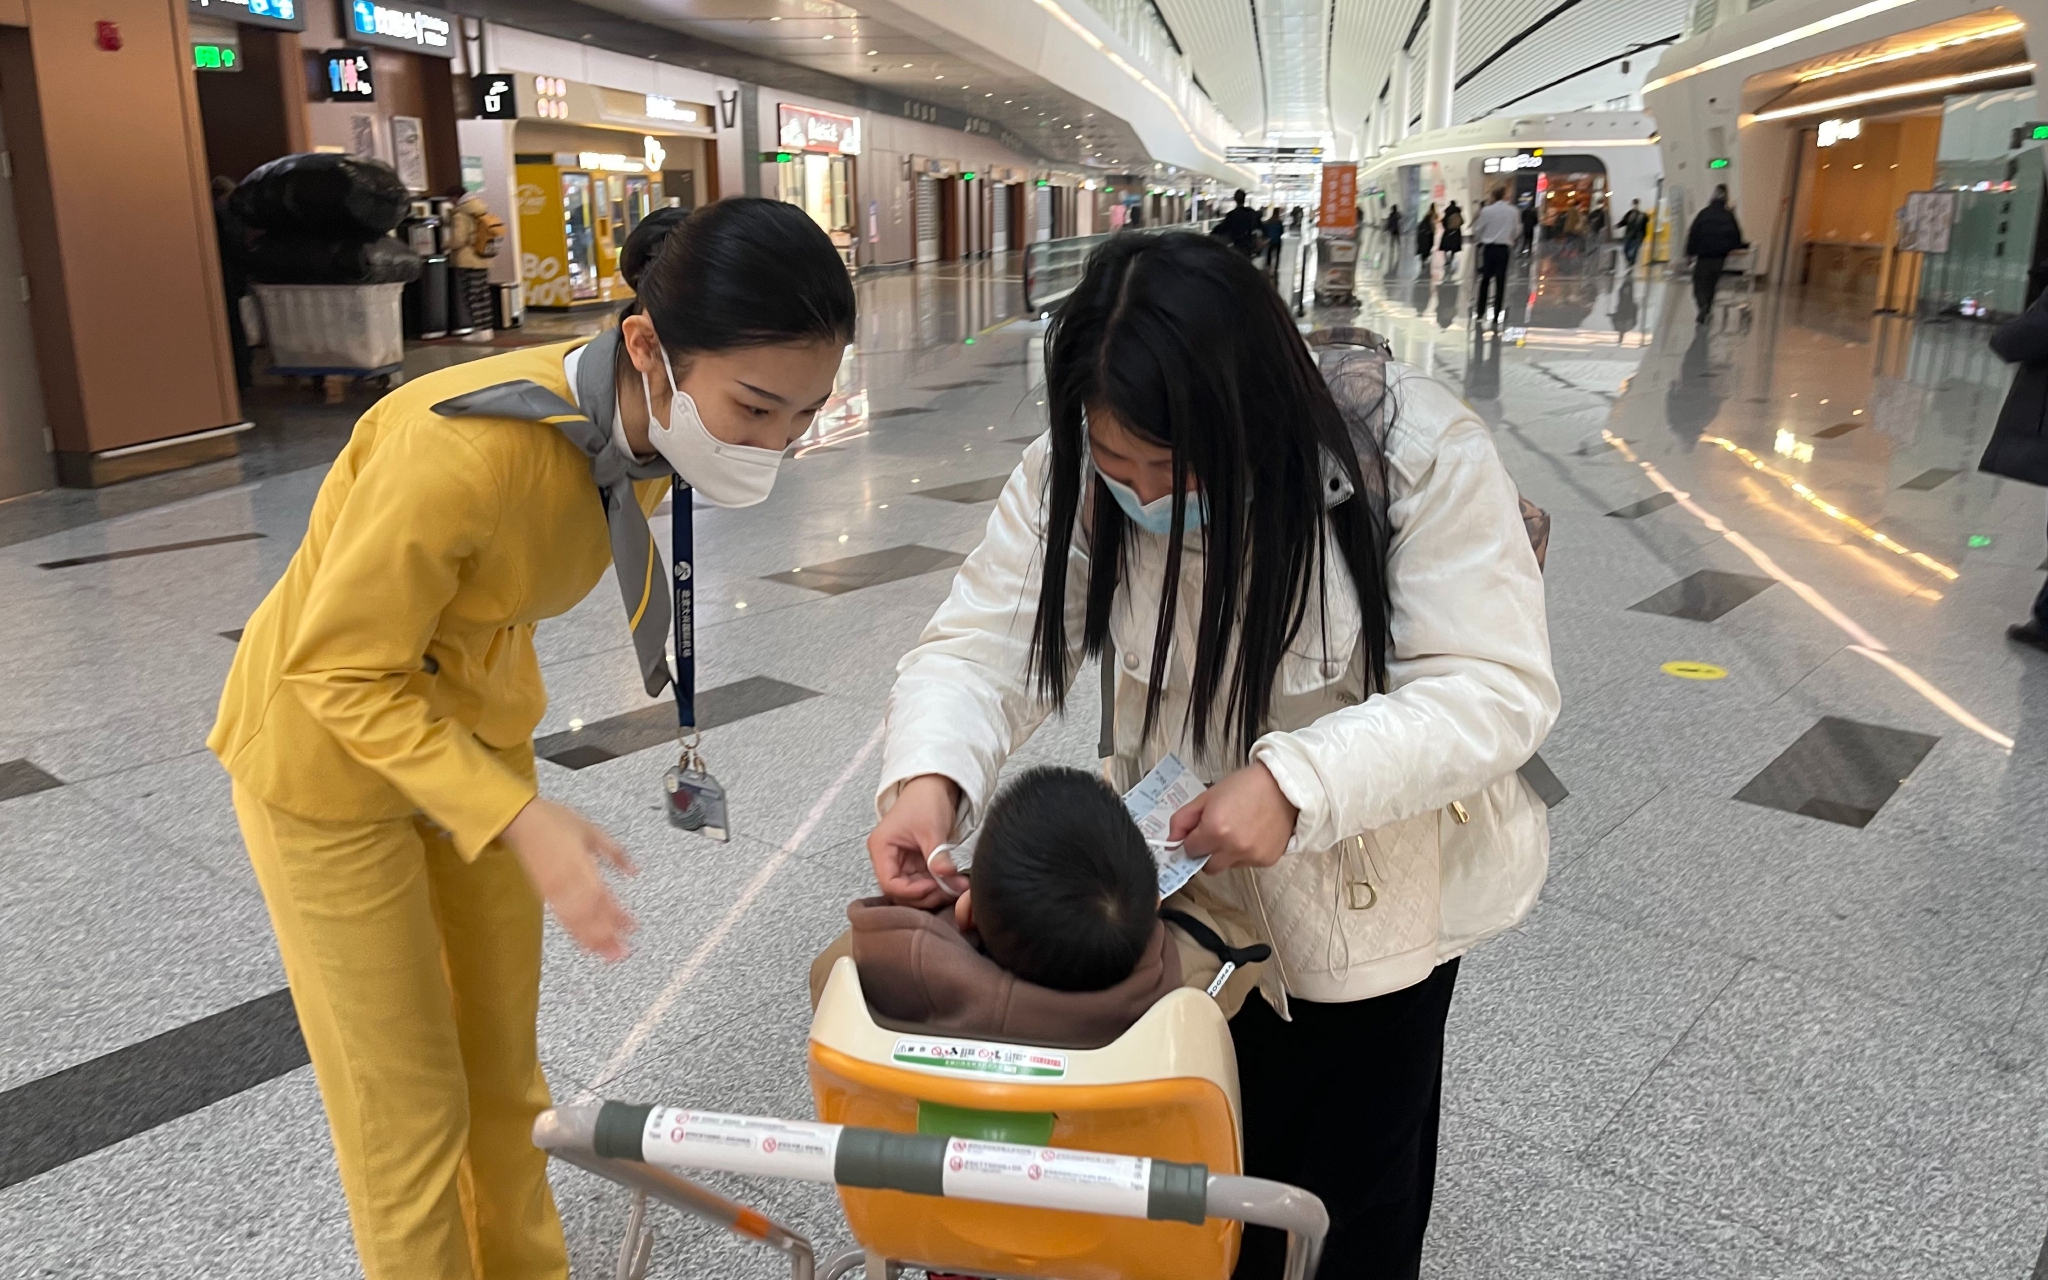 大兴机场指廊管家王海雅提醒旅客帮小朋友戴好口罩。新京报记者 吴婷婷 摄